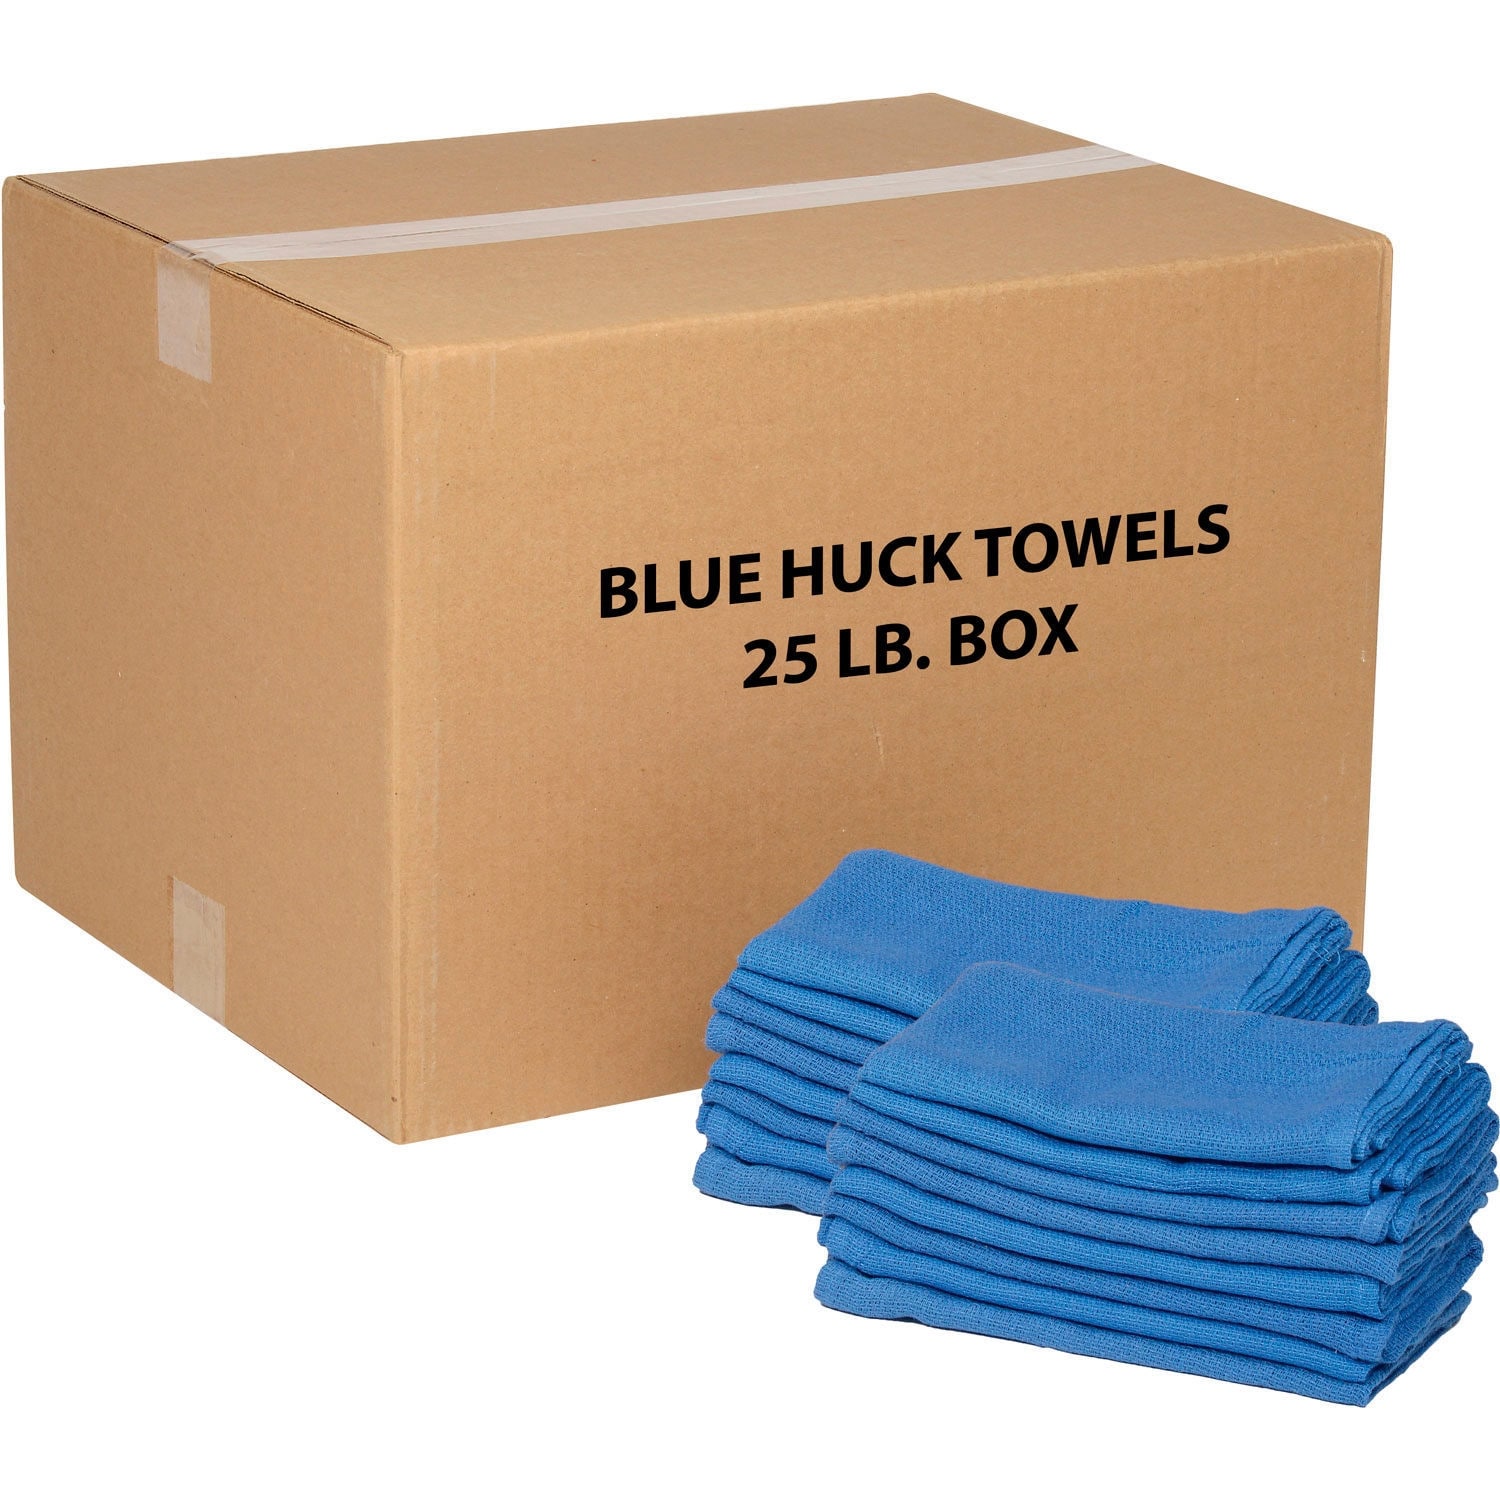 25 Lb. Box 100% Cotton Huck Towels, Blue - 15